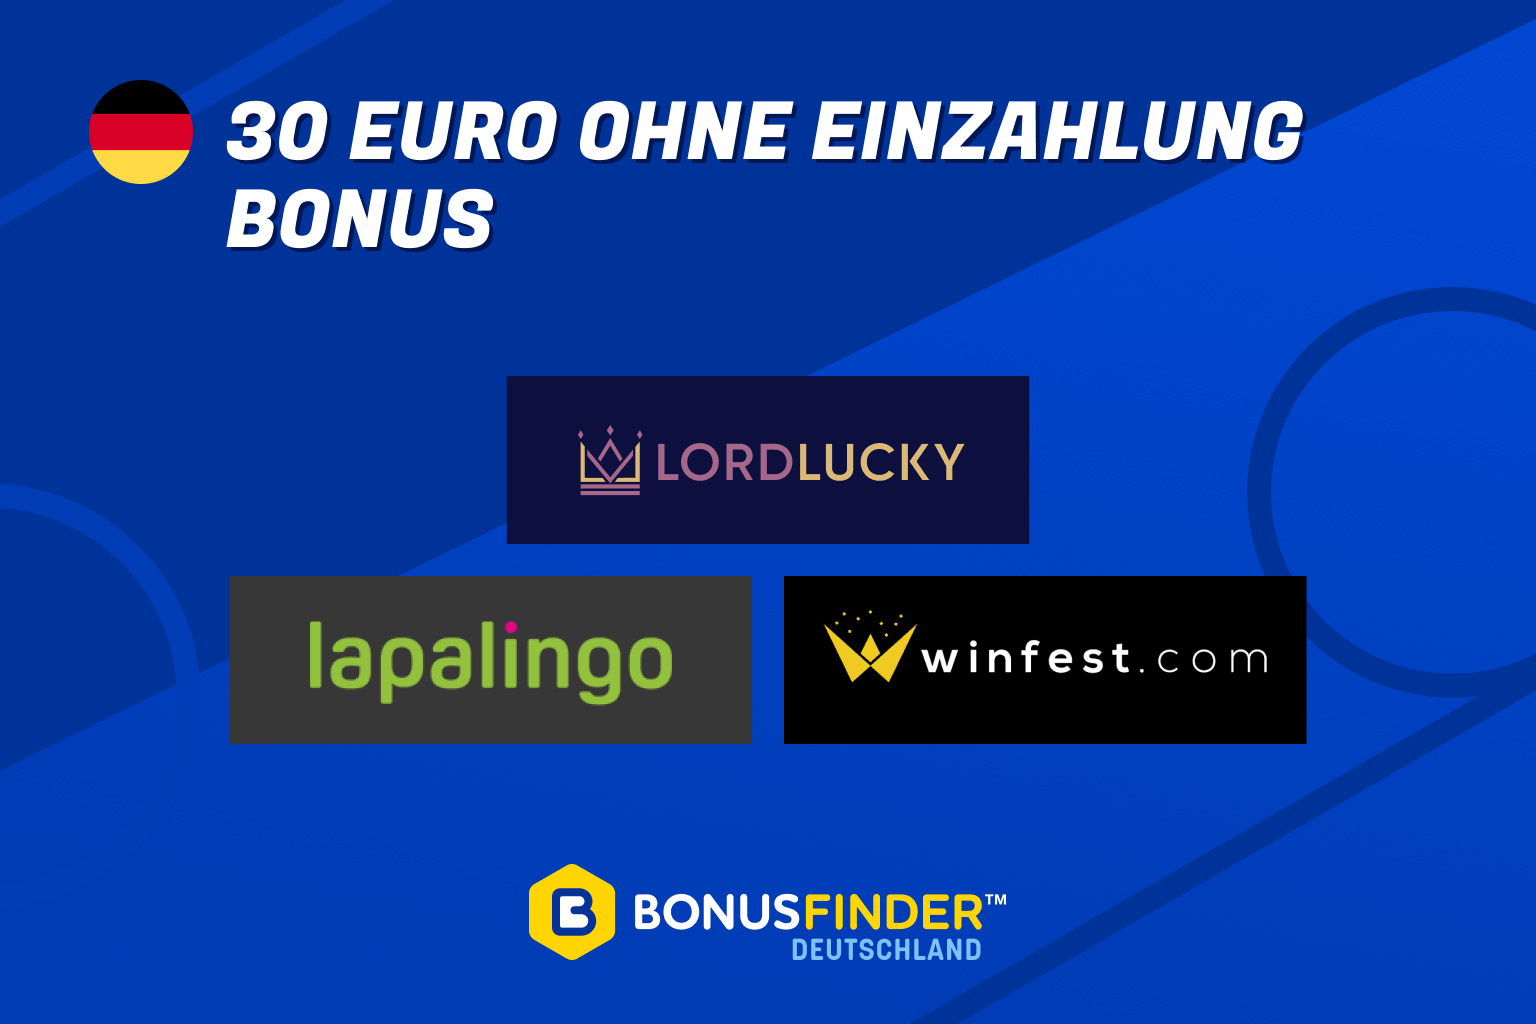 30 euro ohne einzahlung bonus